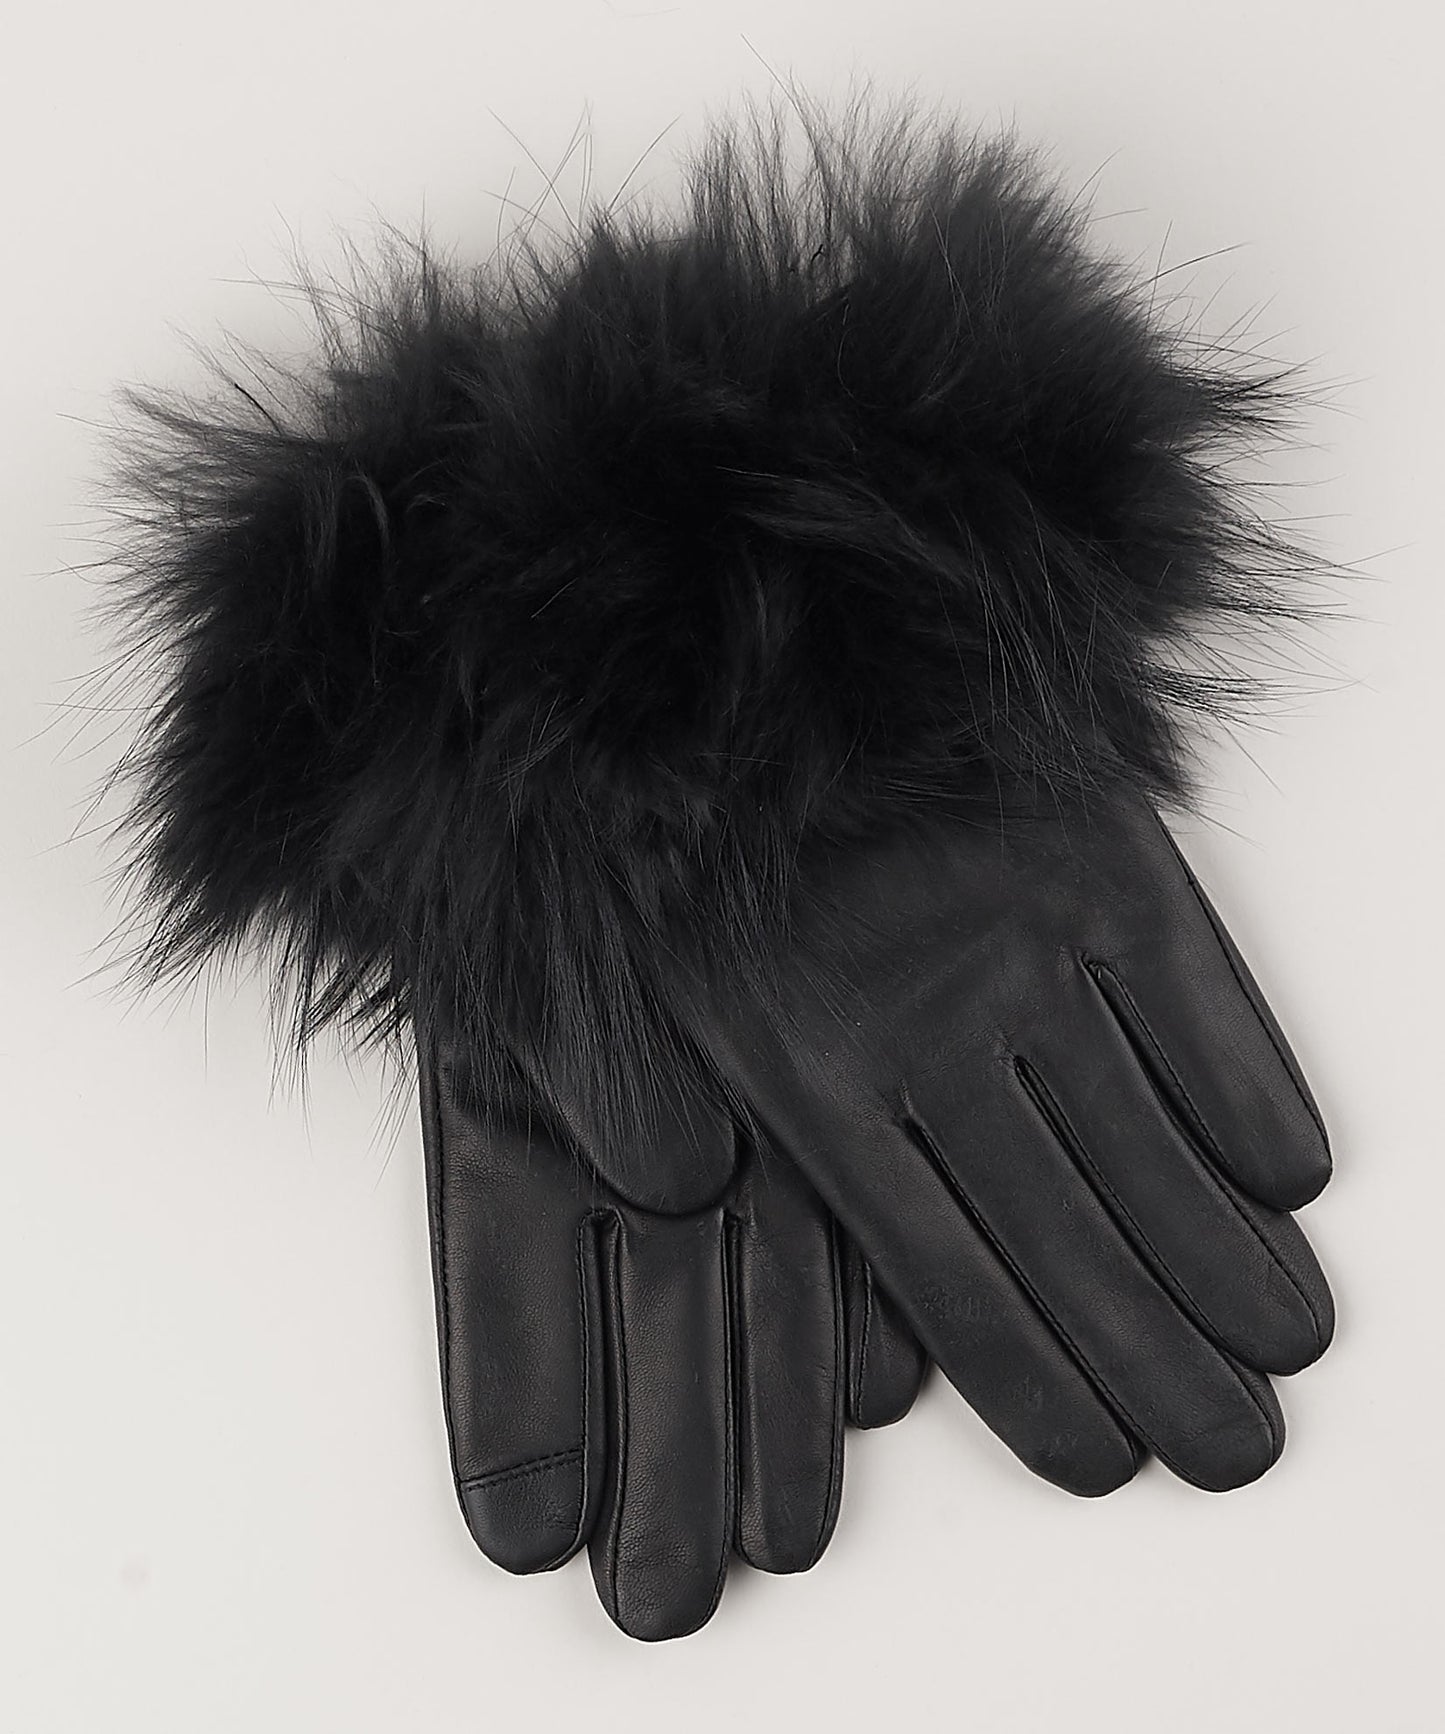 Fur Cuff Glove in color Black